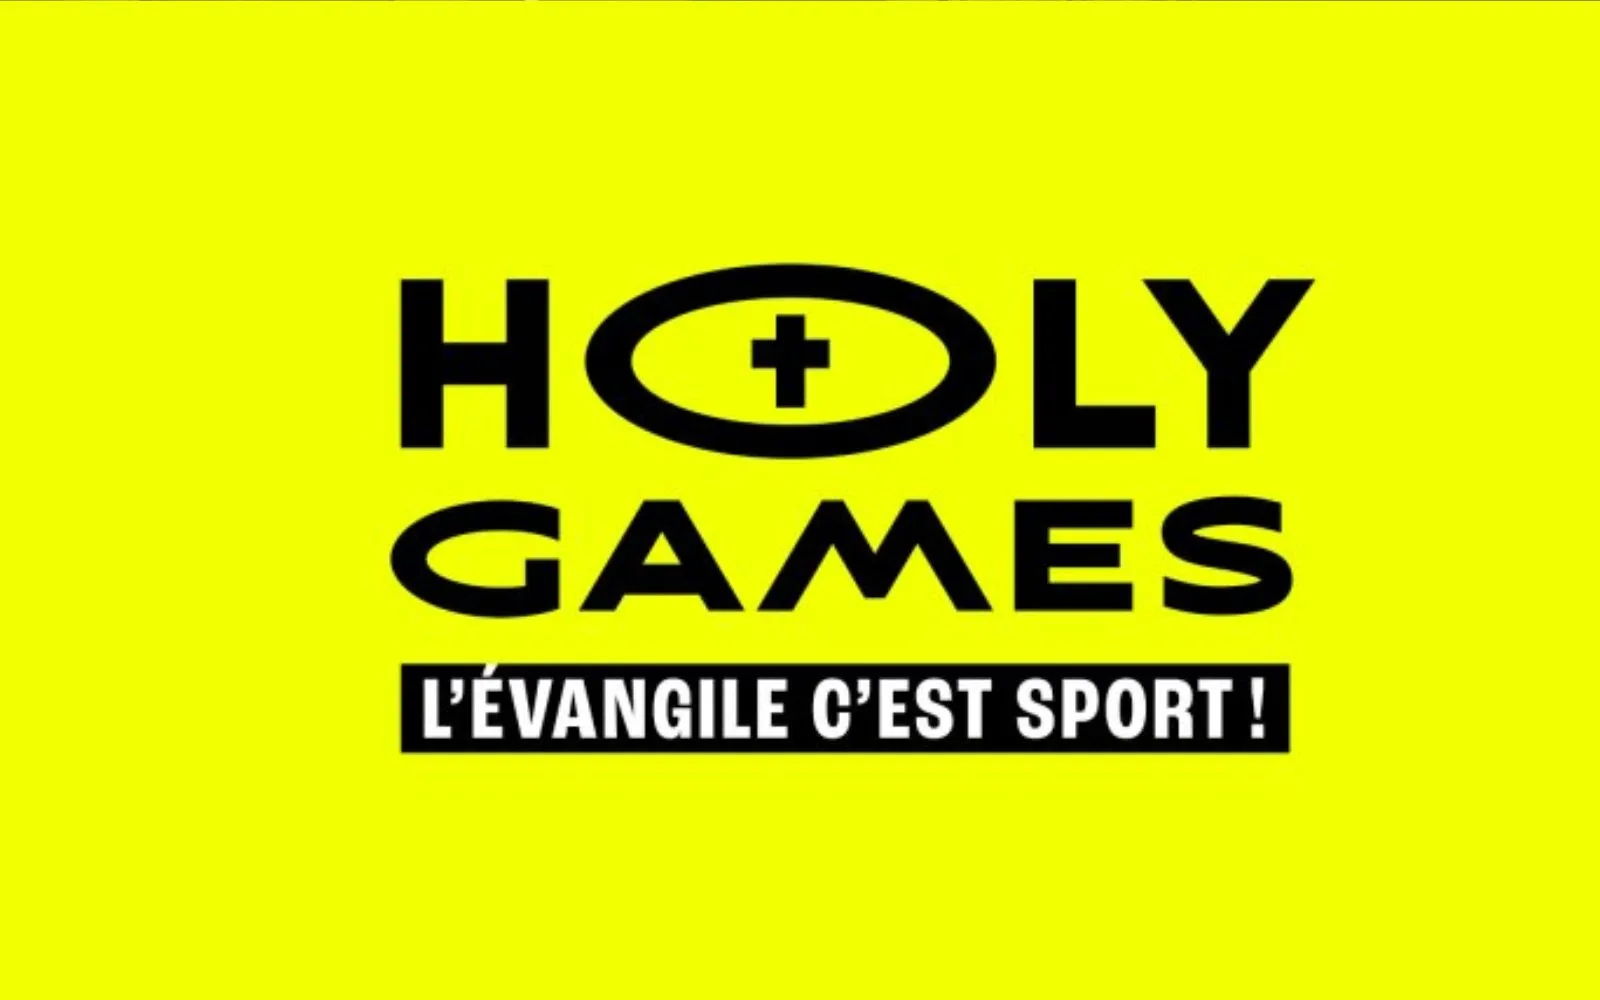 Los Holy Games (Juegos Santos) buscan promover la santidad a través del deporte.?w=200&h=150